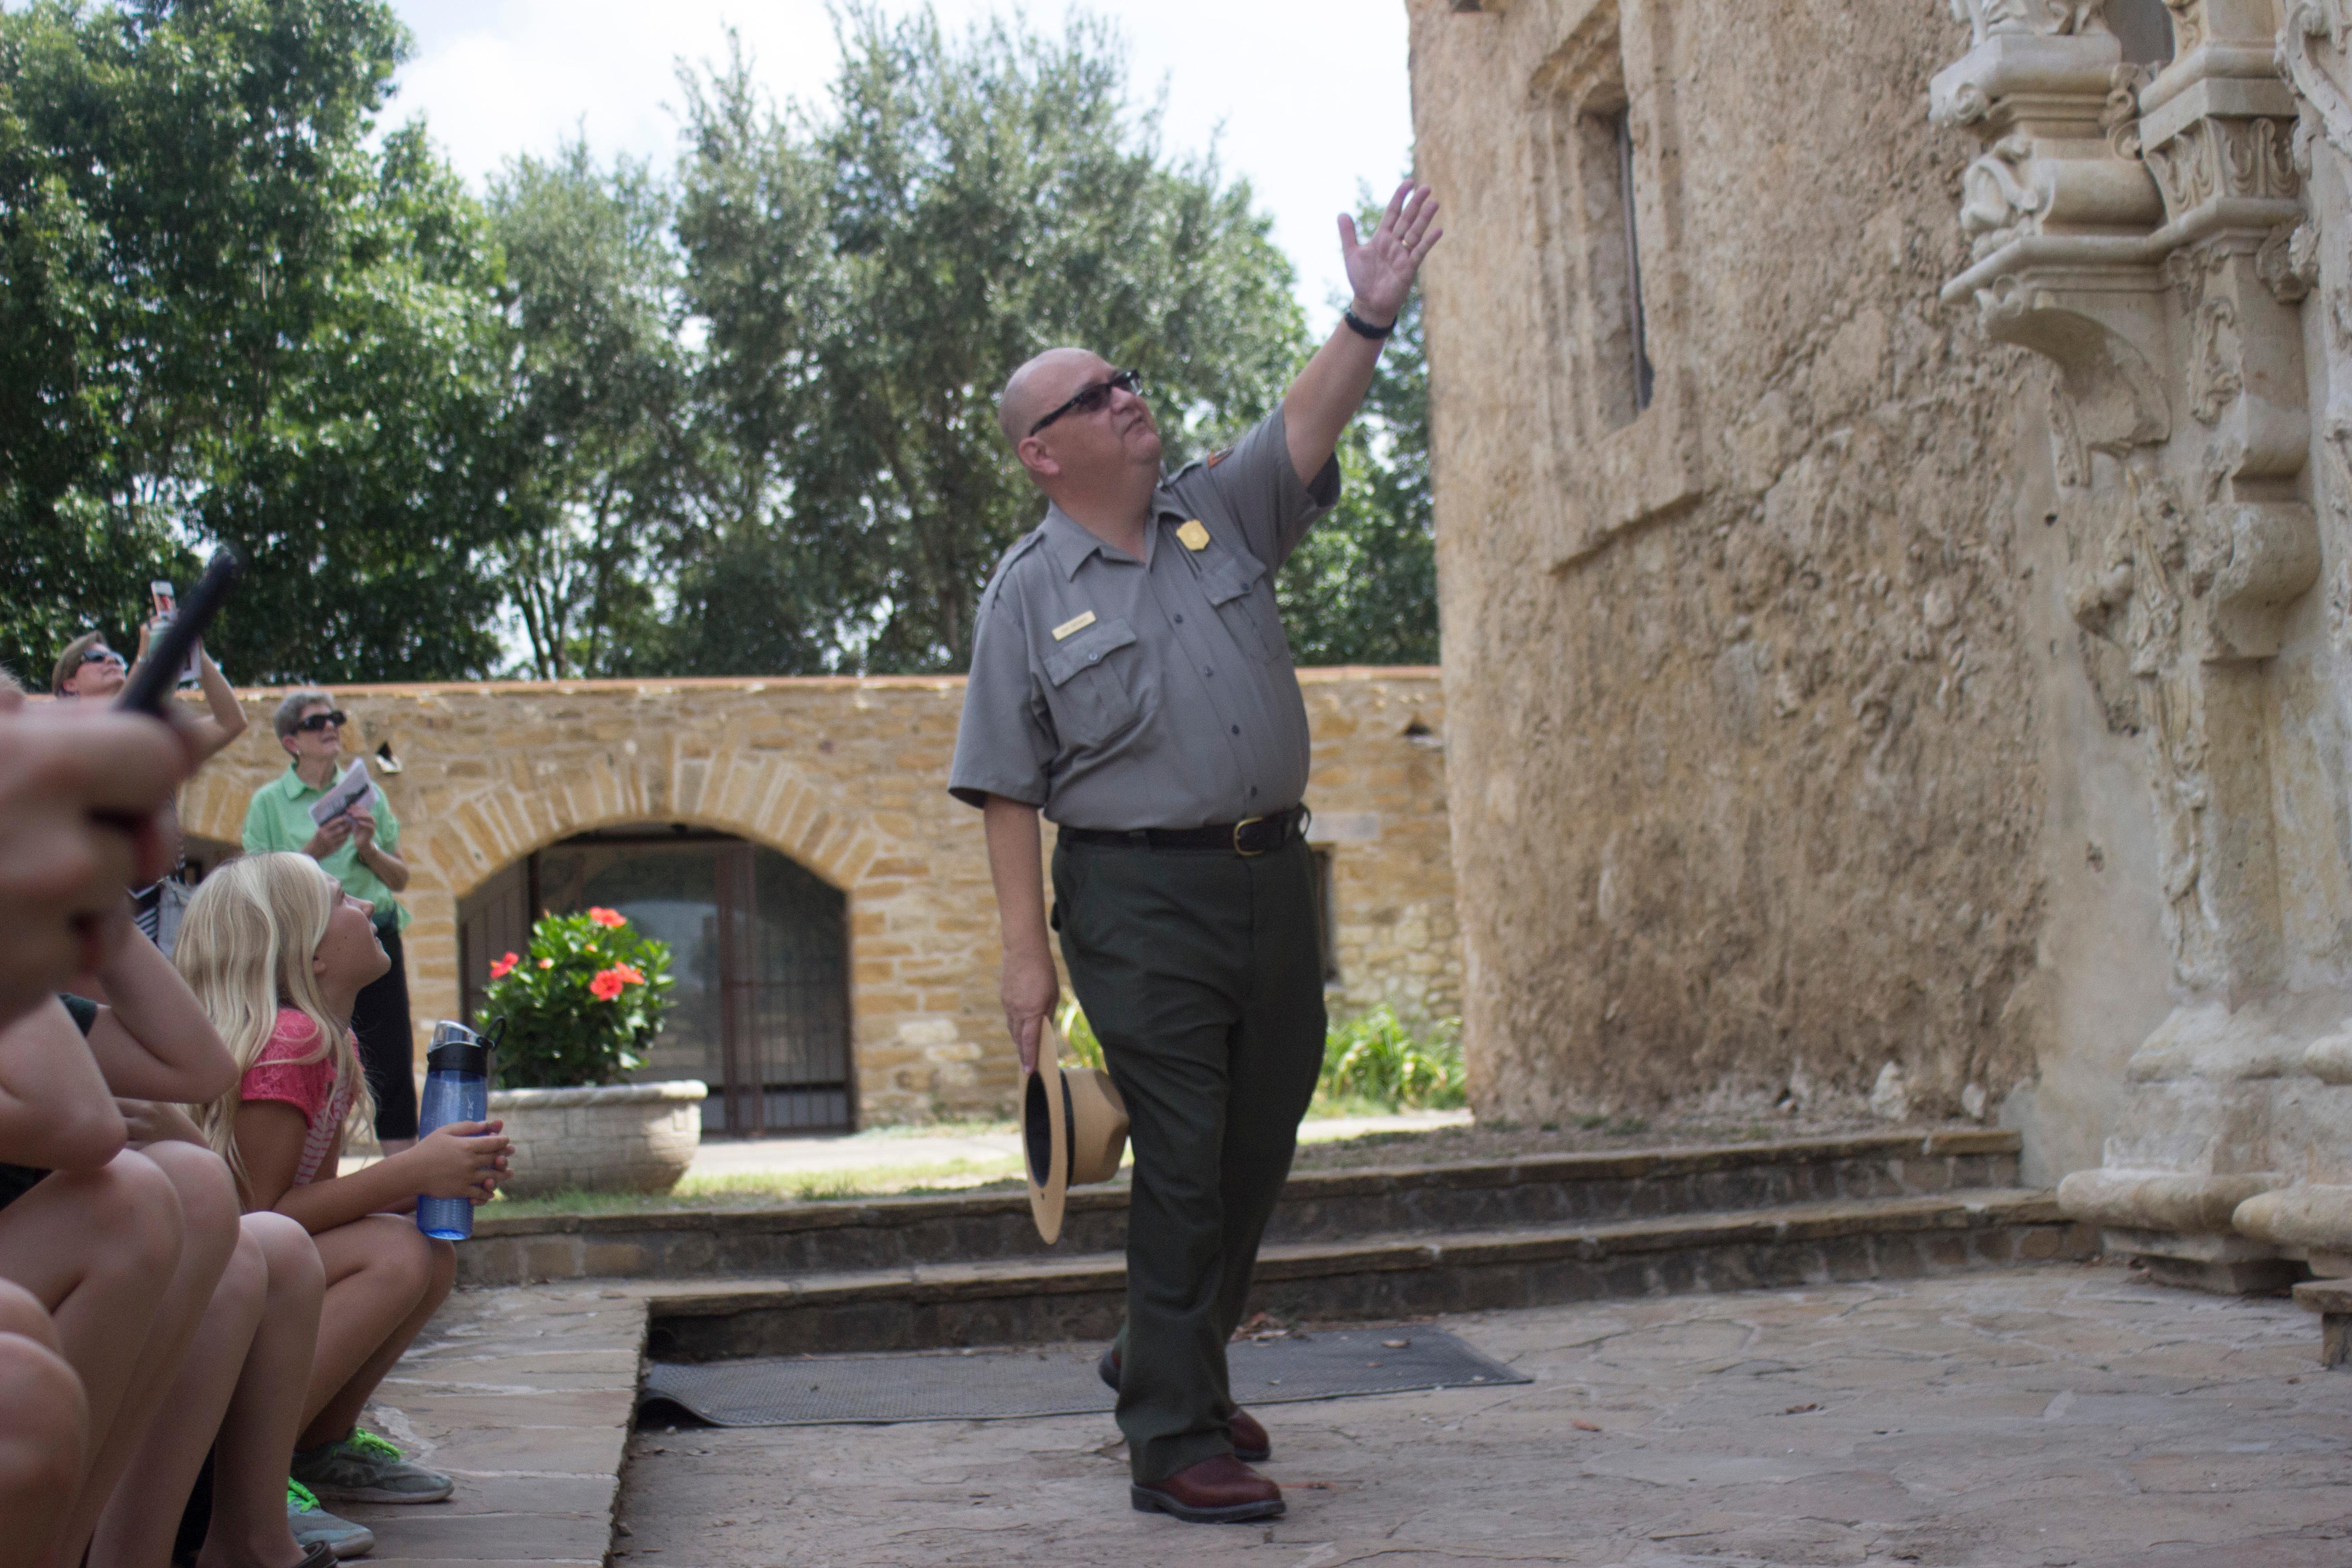 Park Ranger leads a tour through Mission San José